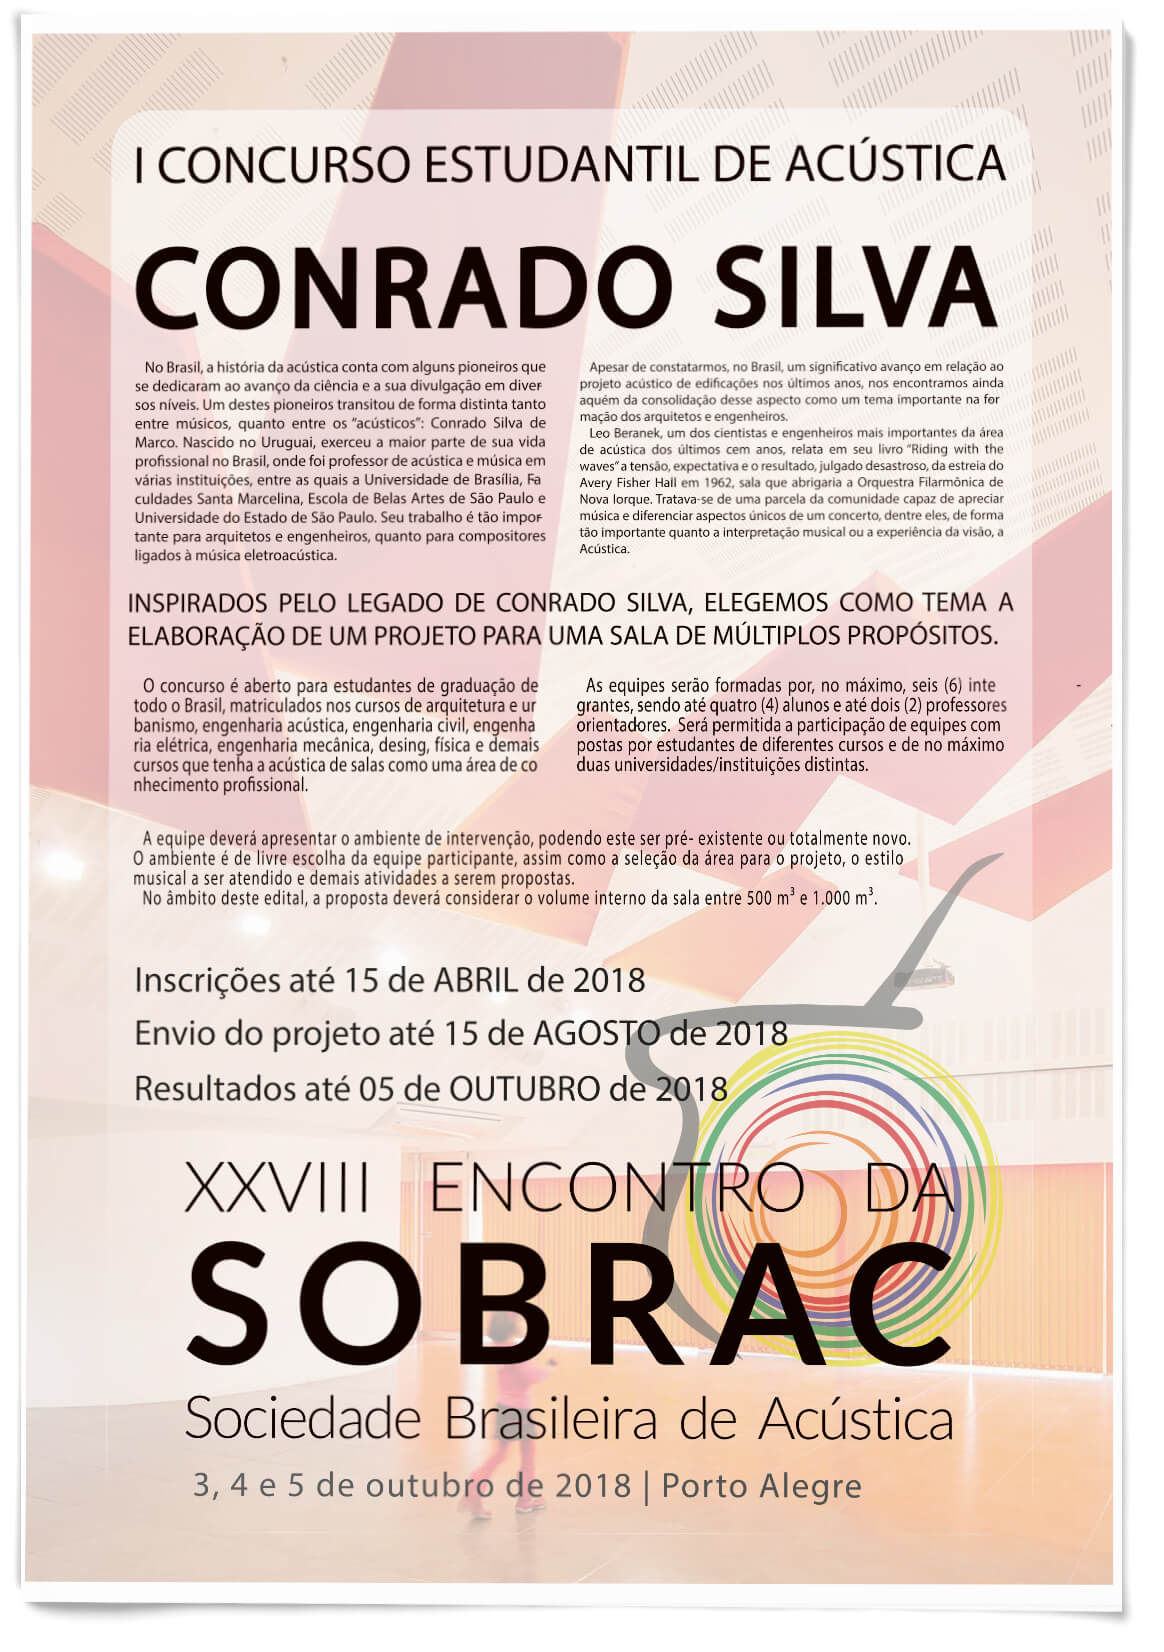 Capa - I Concurso Estudantil de Acústica Conrado Silva